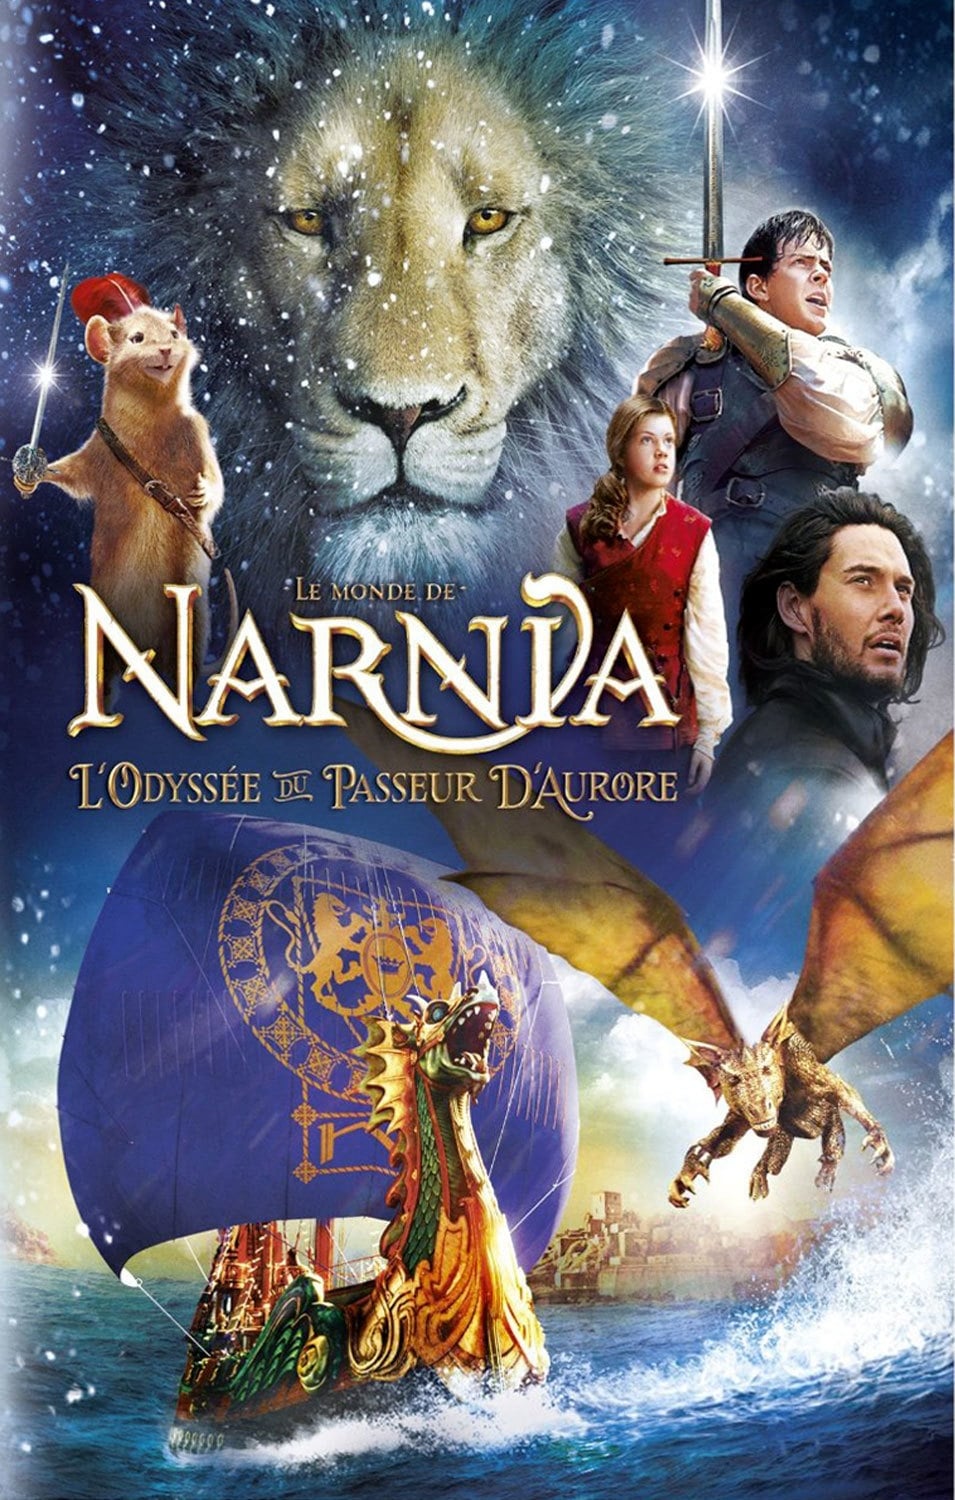 Cronicile Din Narnia 1 Film Online Subtitrat Film Cronicile din Narnia: Calatorie pe mare cu Zori-de-Zi - Cronicile